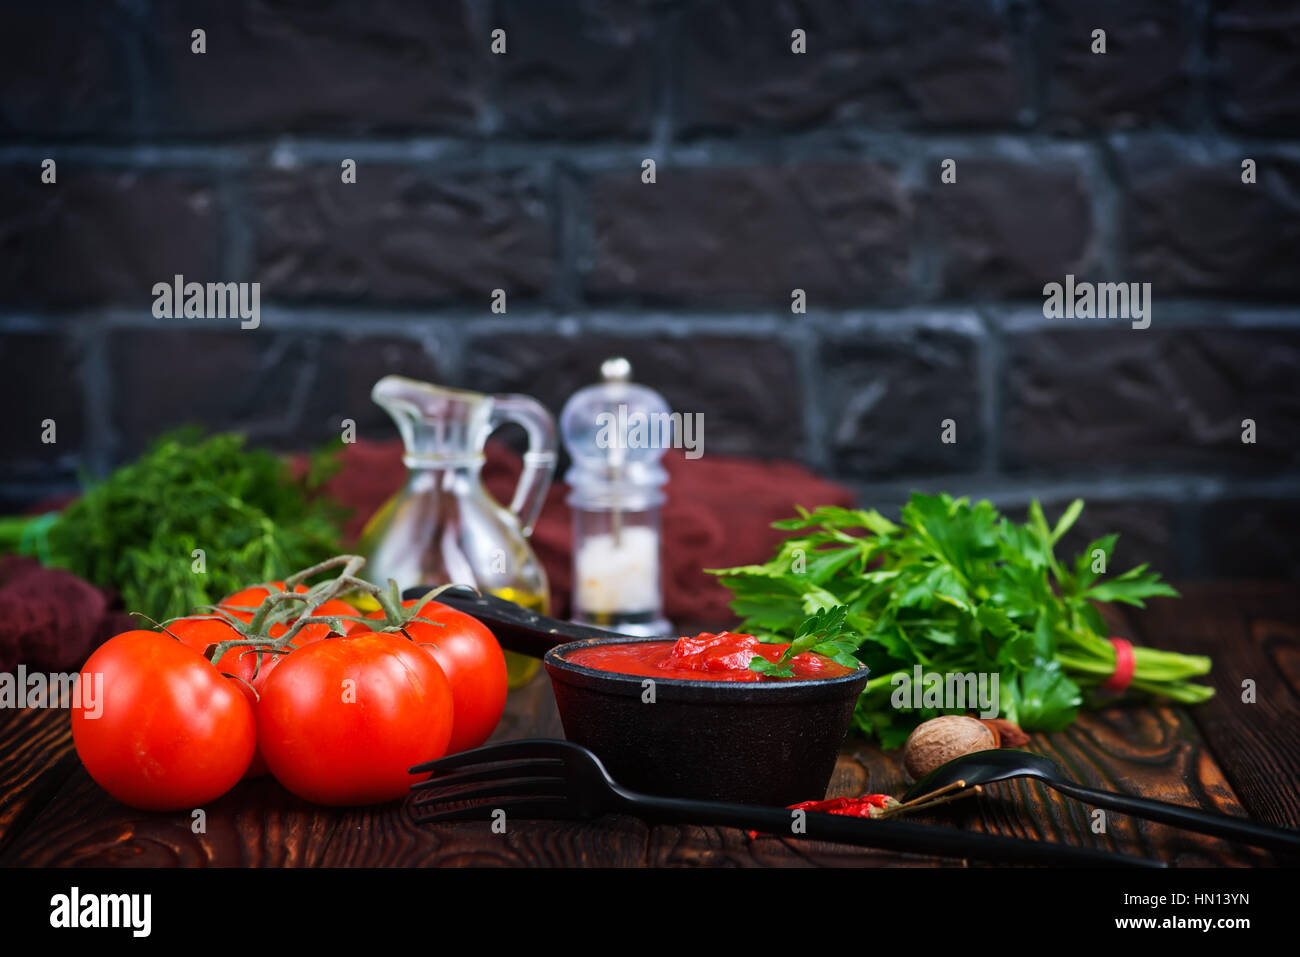 La sauce tomate et la tomate fraîche sur une table Banque D'Images